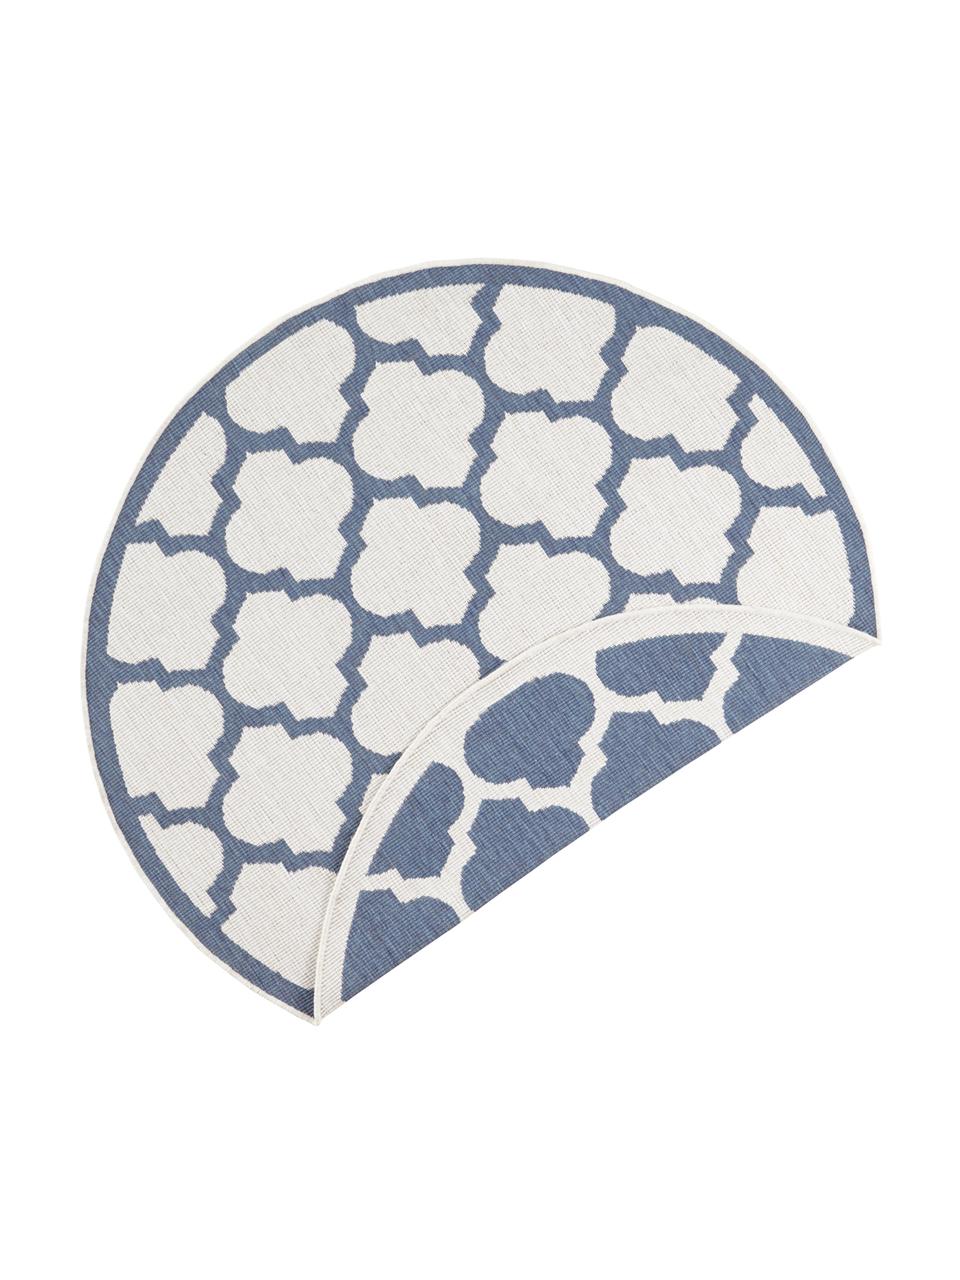 Okrúhly obojstranný koberec do interiéru/exteriéru Palermo, Modrá, krémová